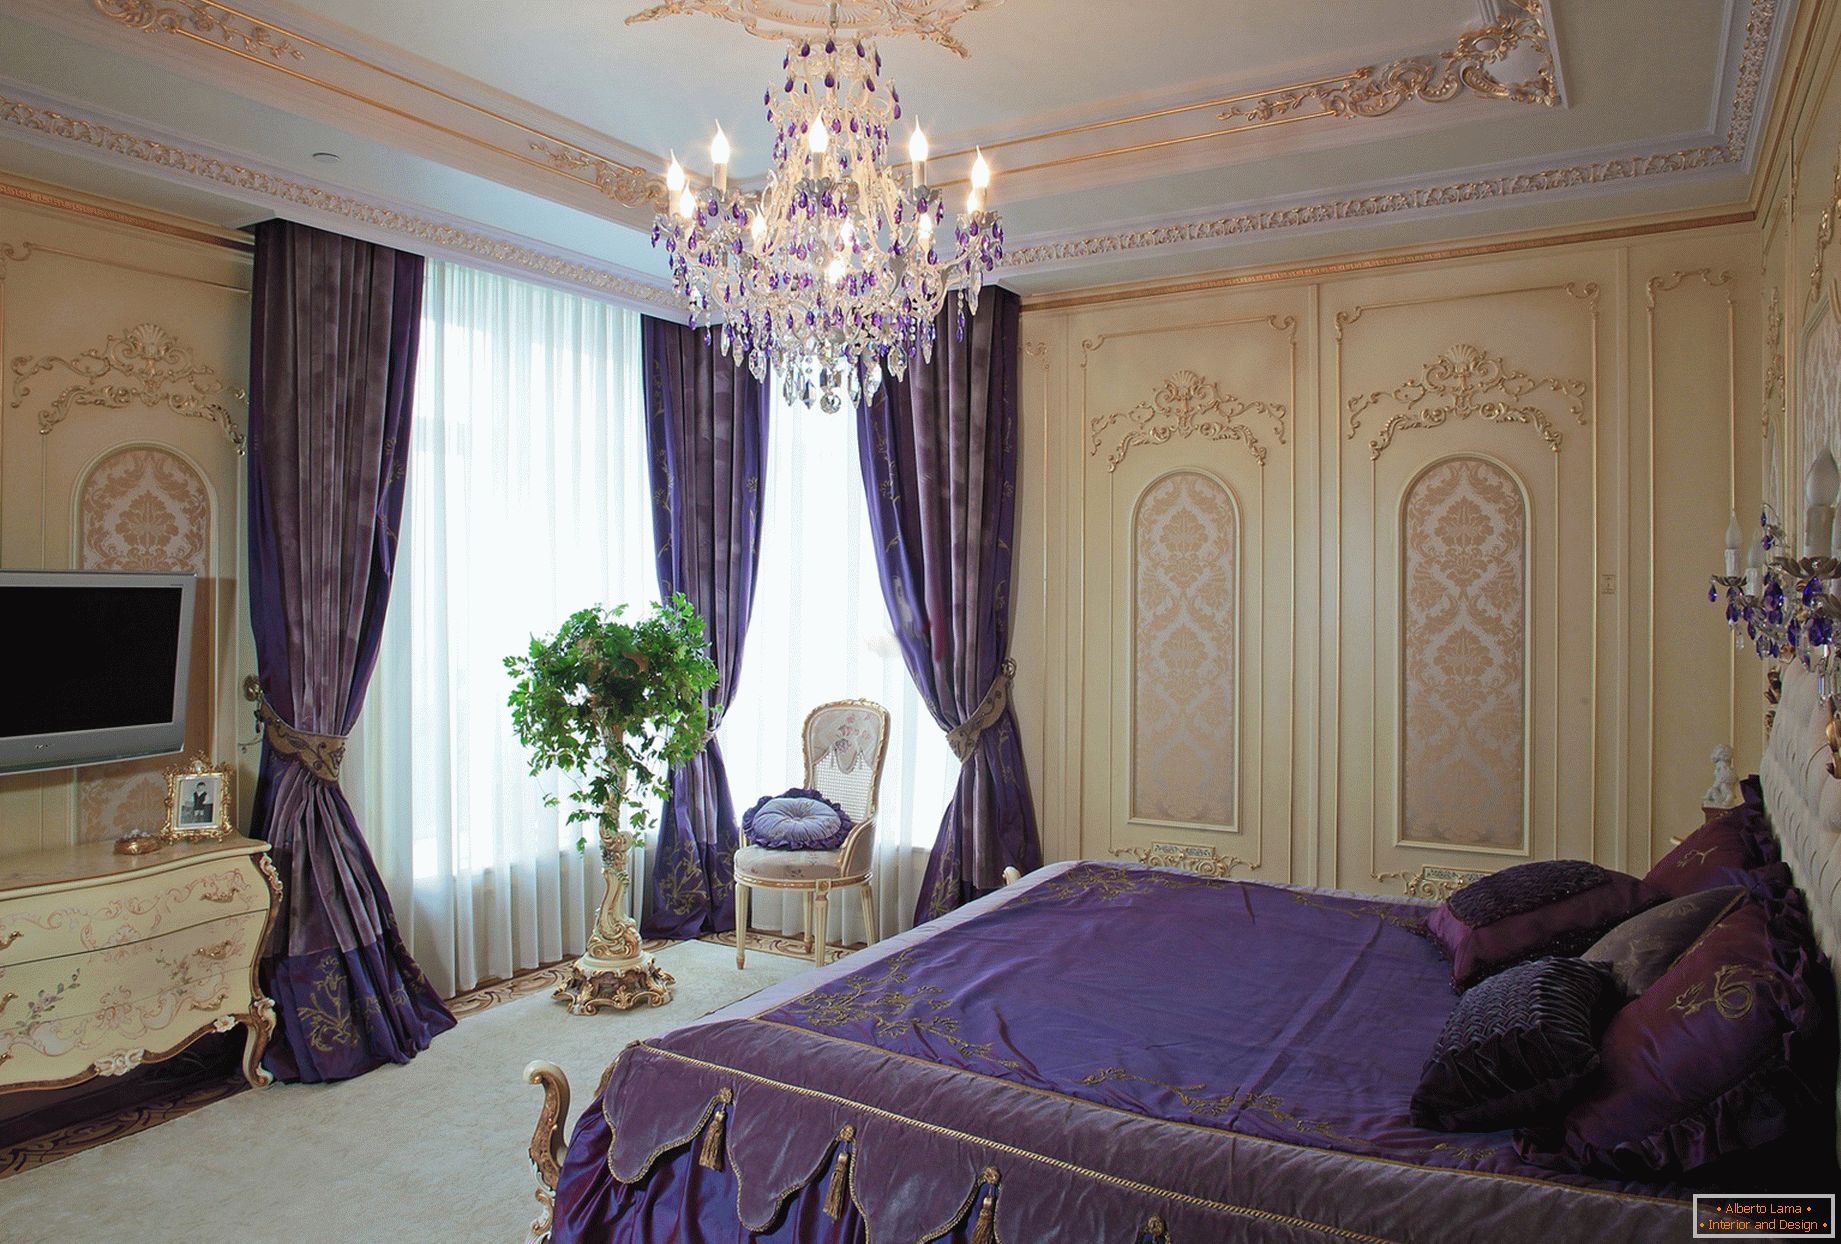 Chambre élégante dans le style baroque. Un concept de design subtil - des rideaux pourpres foncés sont combinés à une literie de même ton.